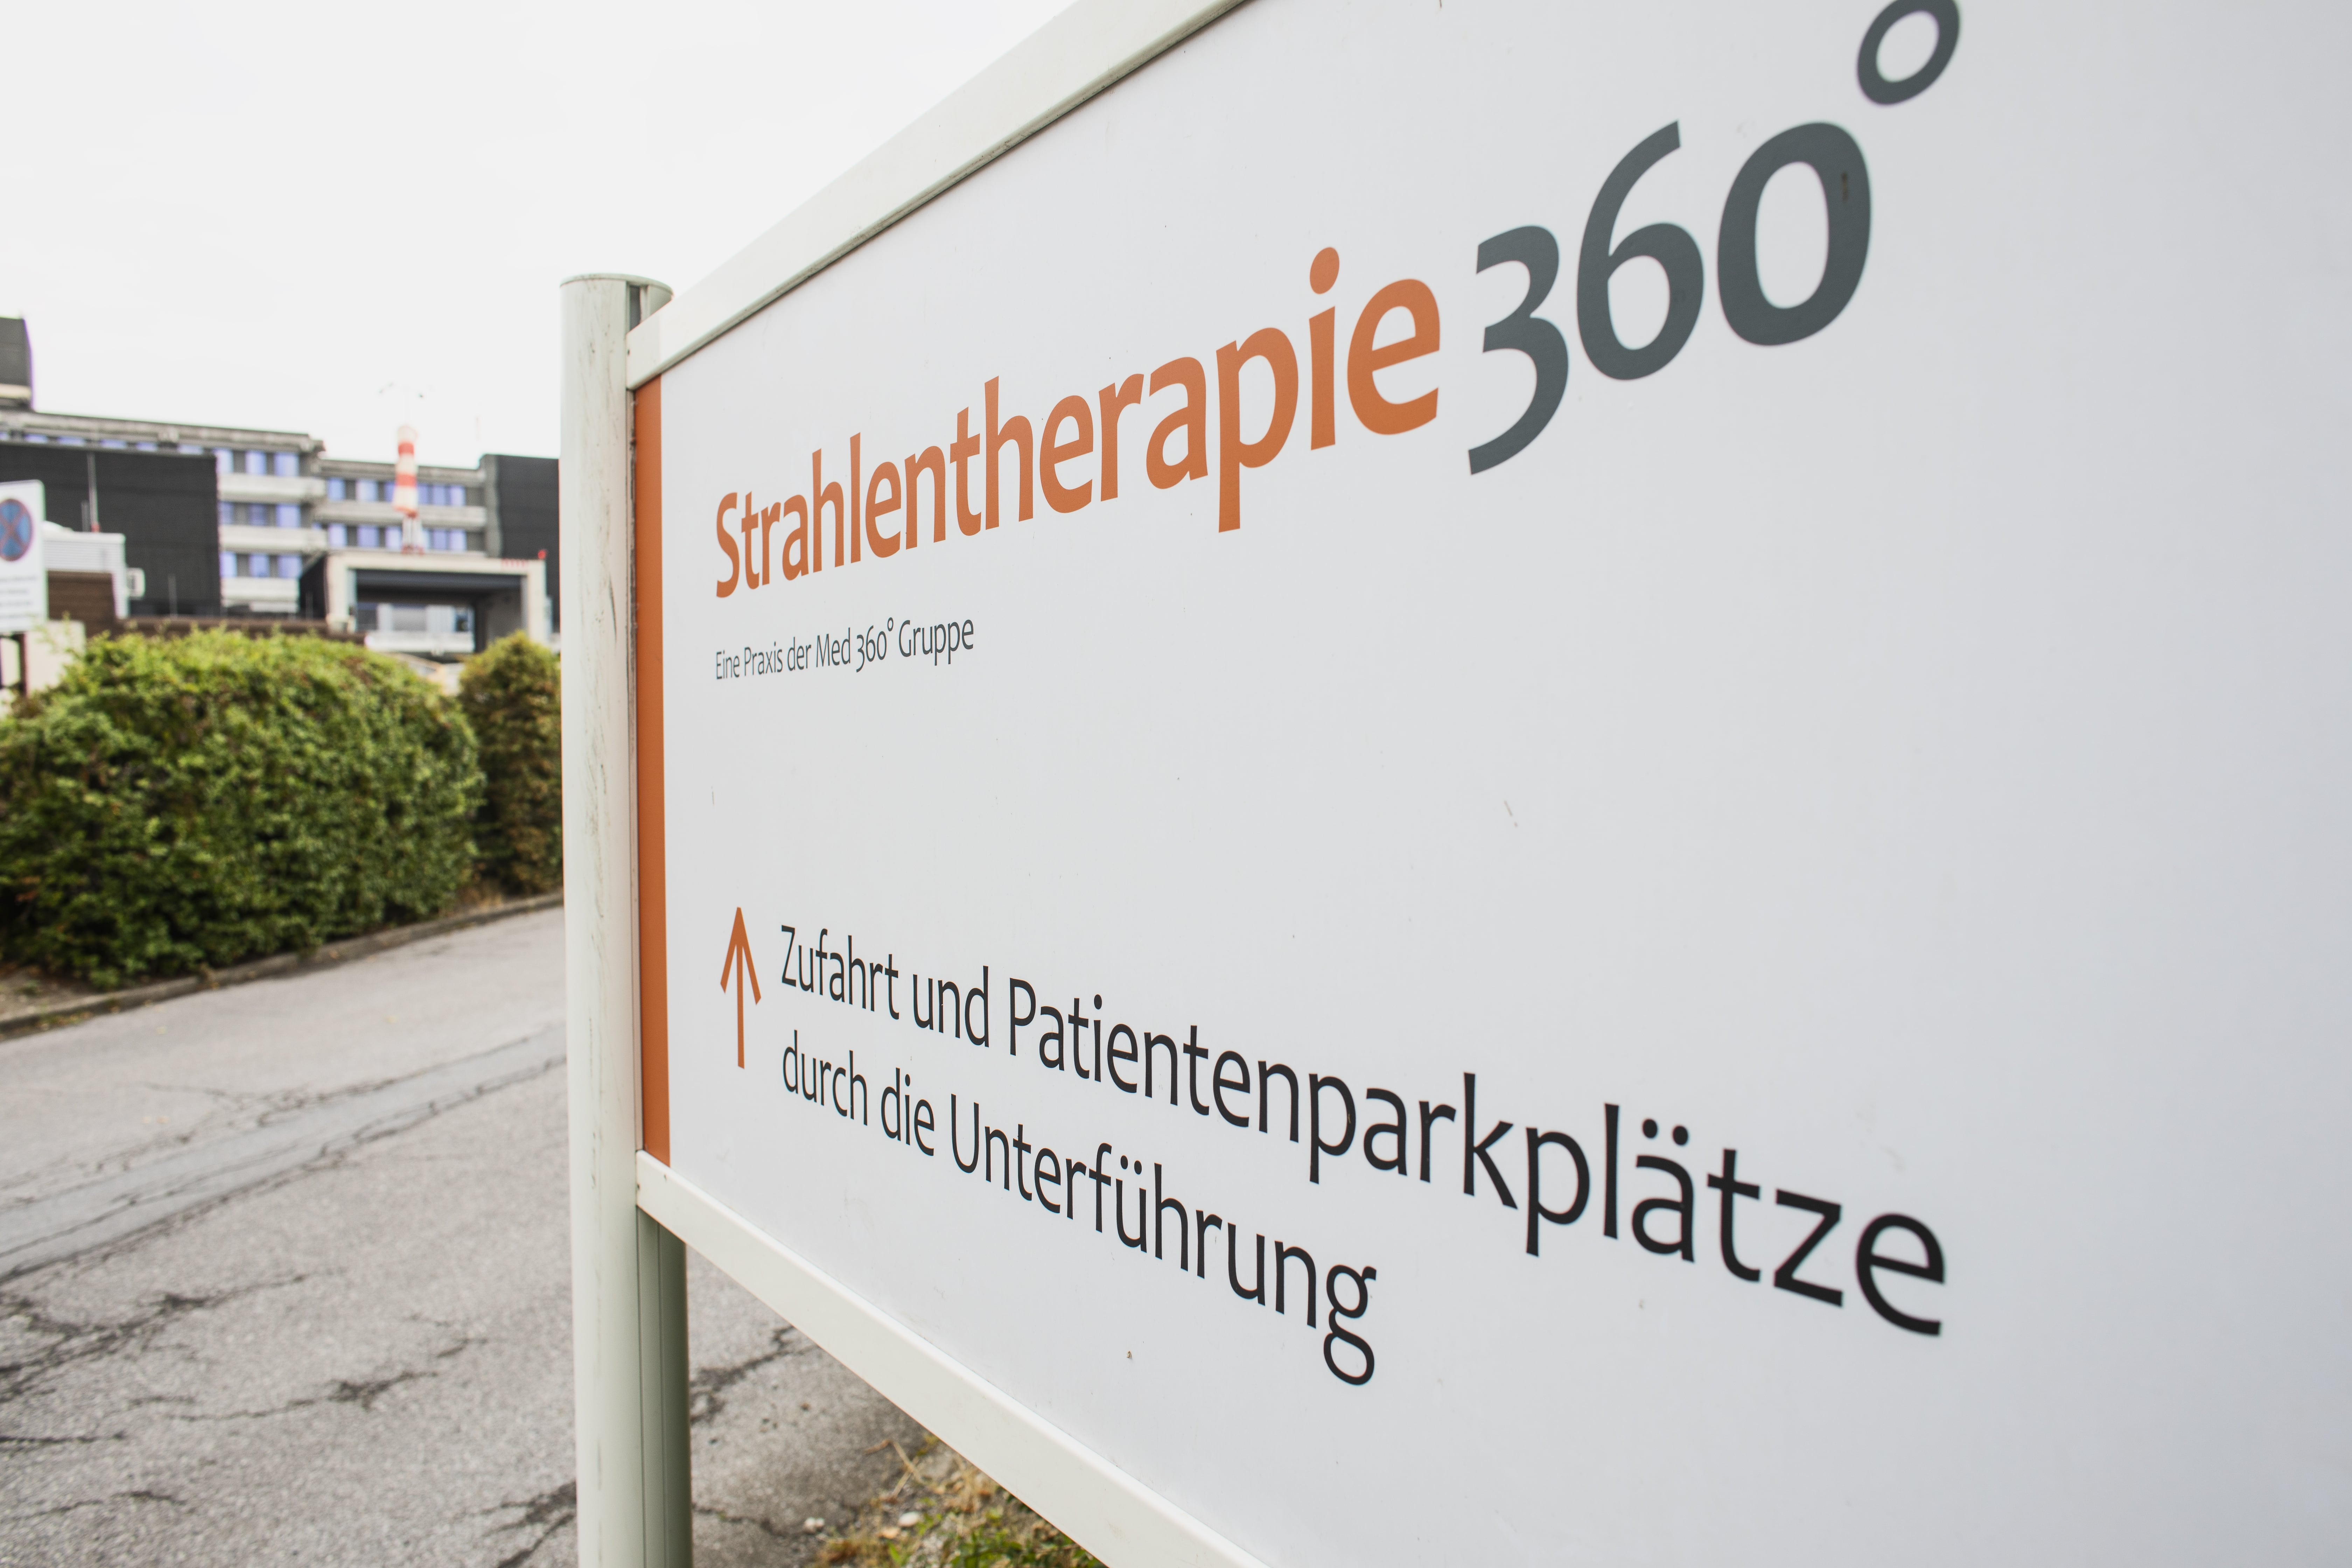 Strahlentherapie 360° - Praxis am Sana-Klinikum in Duisburg, Zu den Rehwiesen 9 in Duisburg